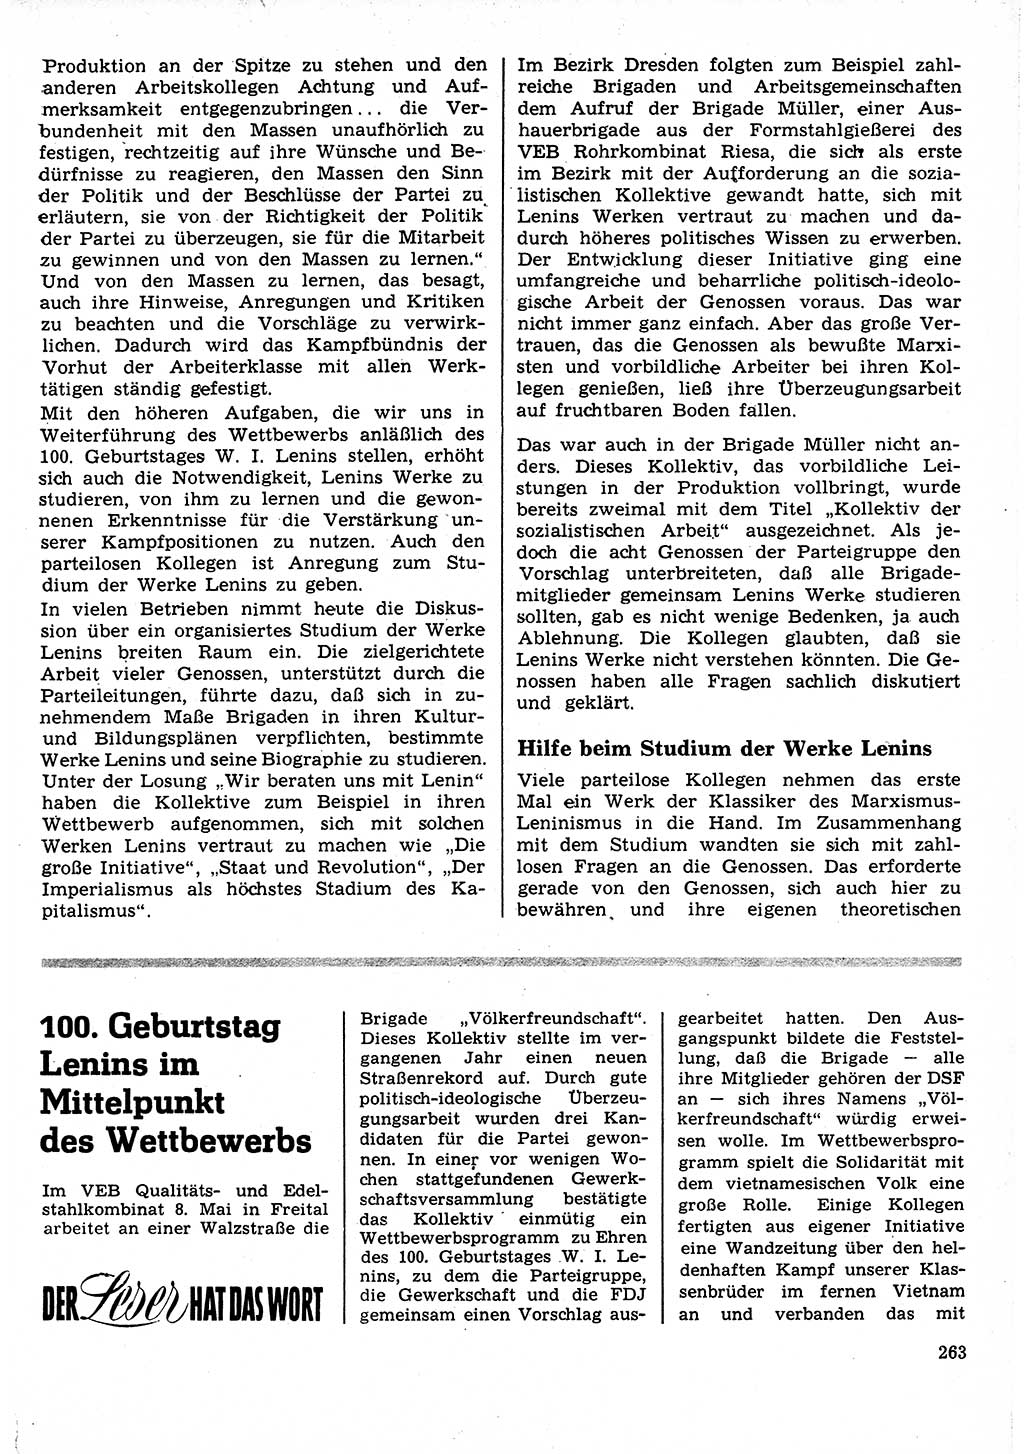 Neuer Weg (NW), Organ des Zentralkomitees (ZK) der SED (Sozialistische Einheitspartei Deutschlands) für Fragen des Parteilebens, 25. Jahrgang [Deutsche Demokratische Republik (DDR)] 1970, Seite 263 (NW ZK SED DDR 1970, S. 263)